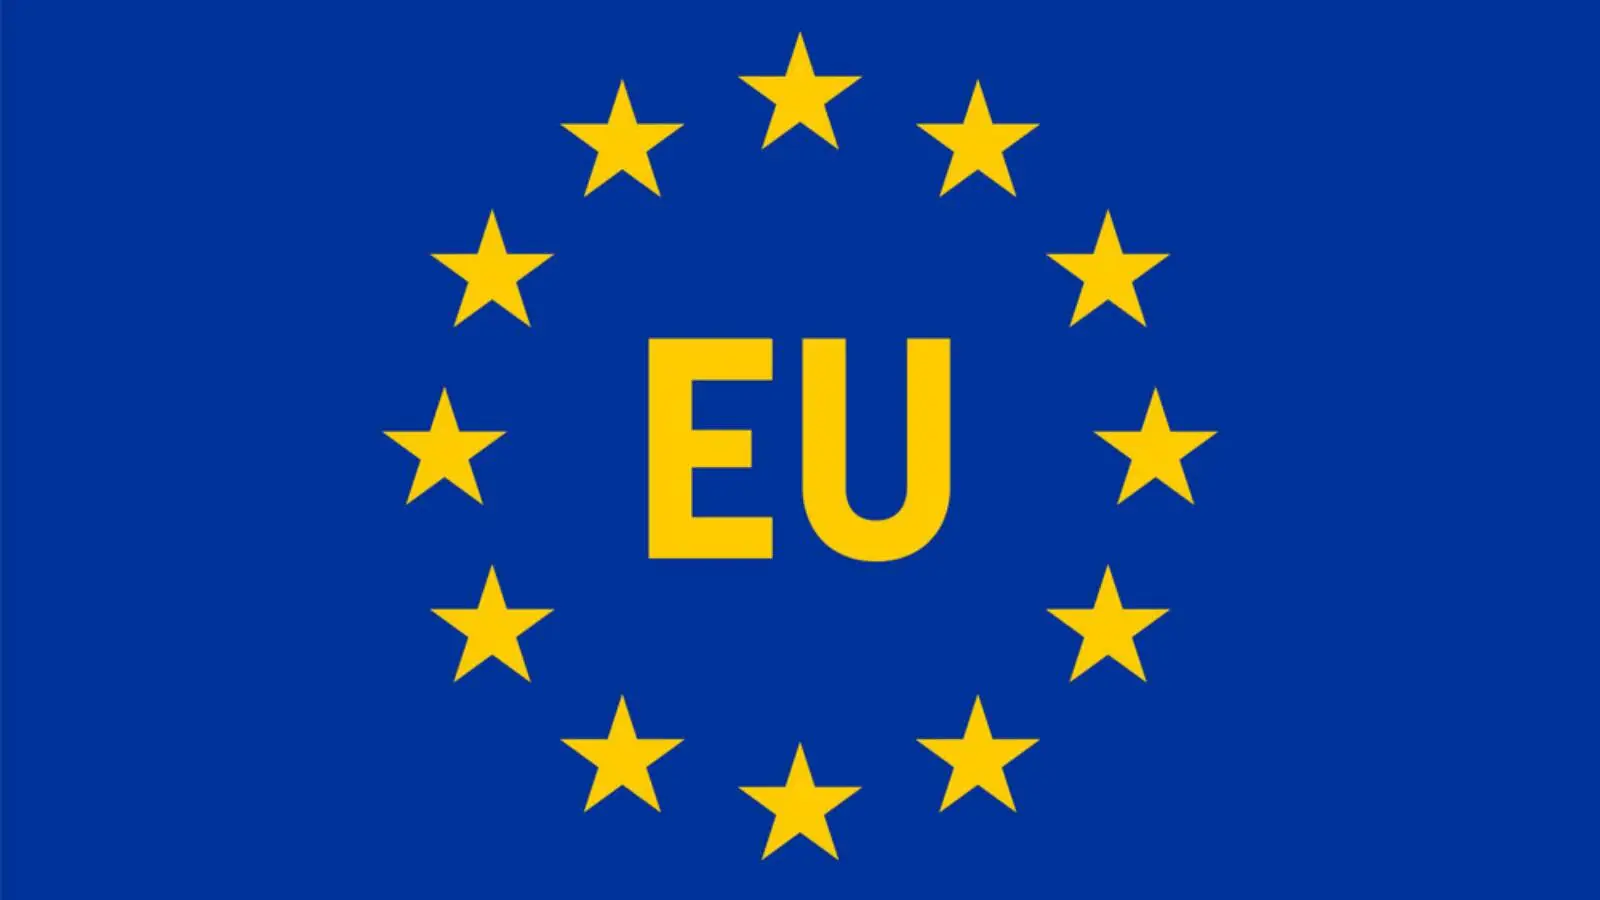 Comisia Europeana cere Limitarea Substantiala a Emiterii Vizelor UE pentru Rusi